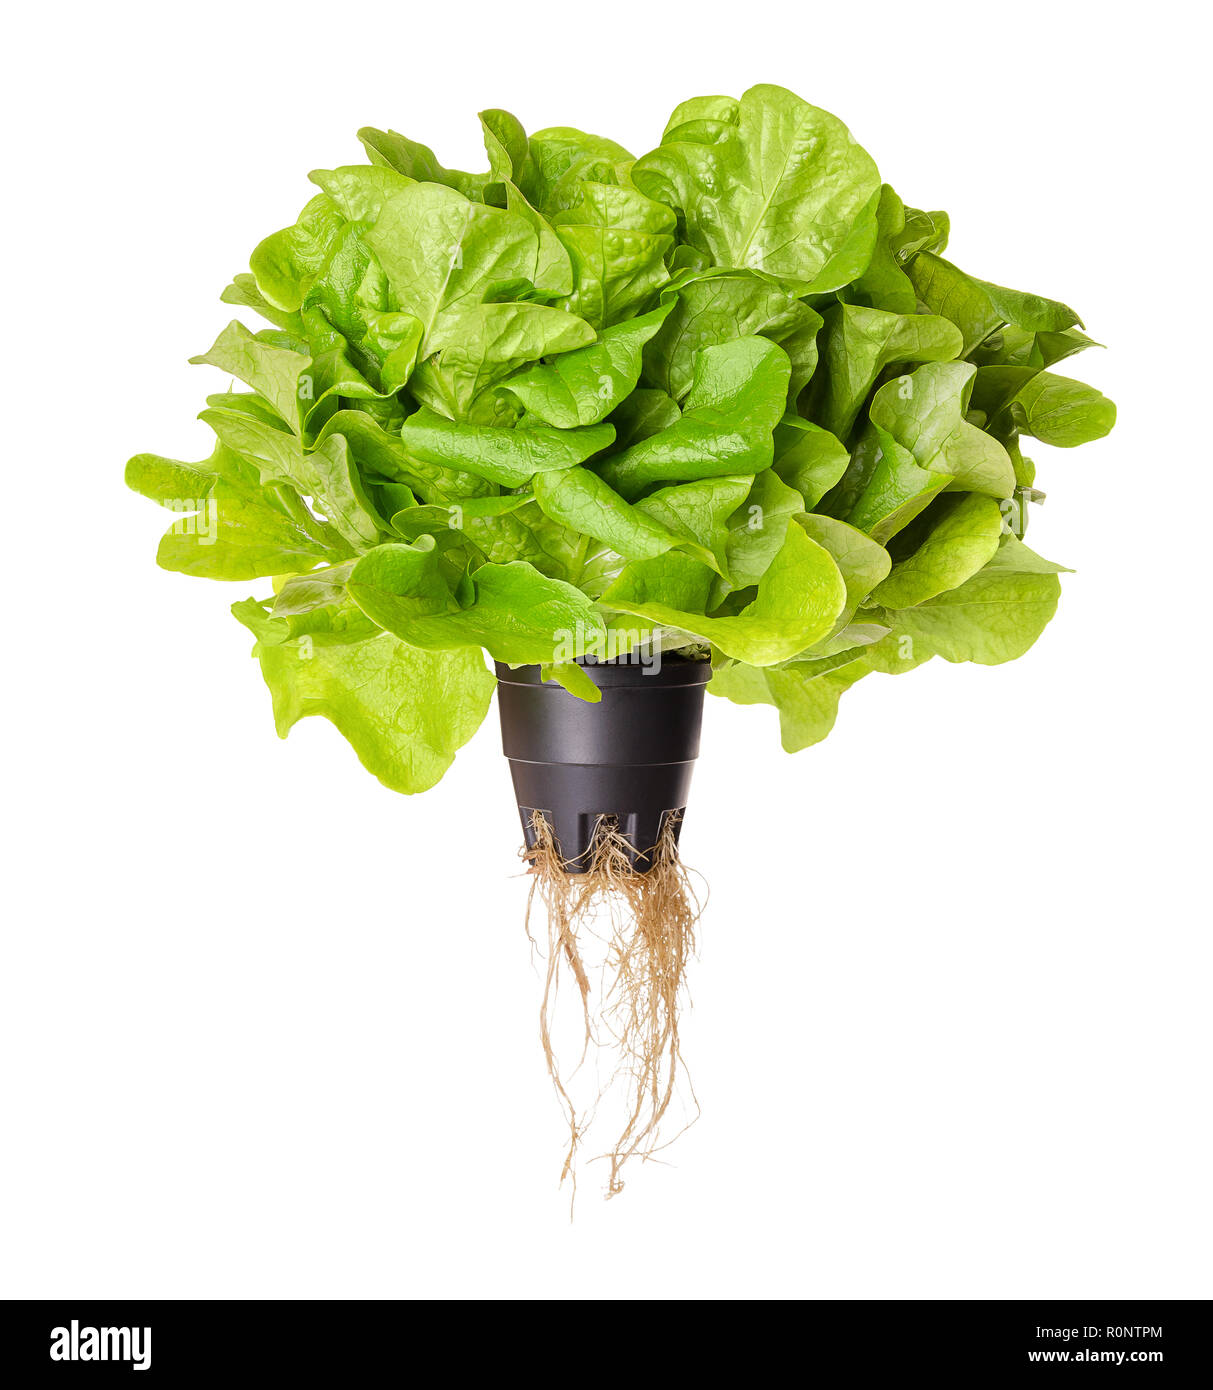 Salanova Grün, Salat, Vorderansicht. Eichenlaub Kopfsalat in Kunststoffbehälter mit Wurzeln. Einem Schnitt bereit, lose Blätter Kopfsalat. Stockfoto